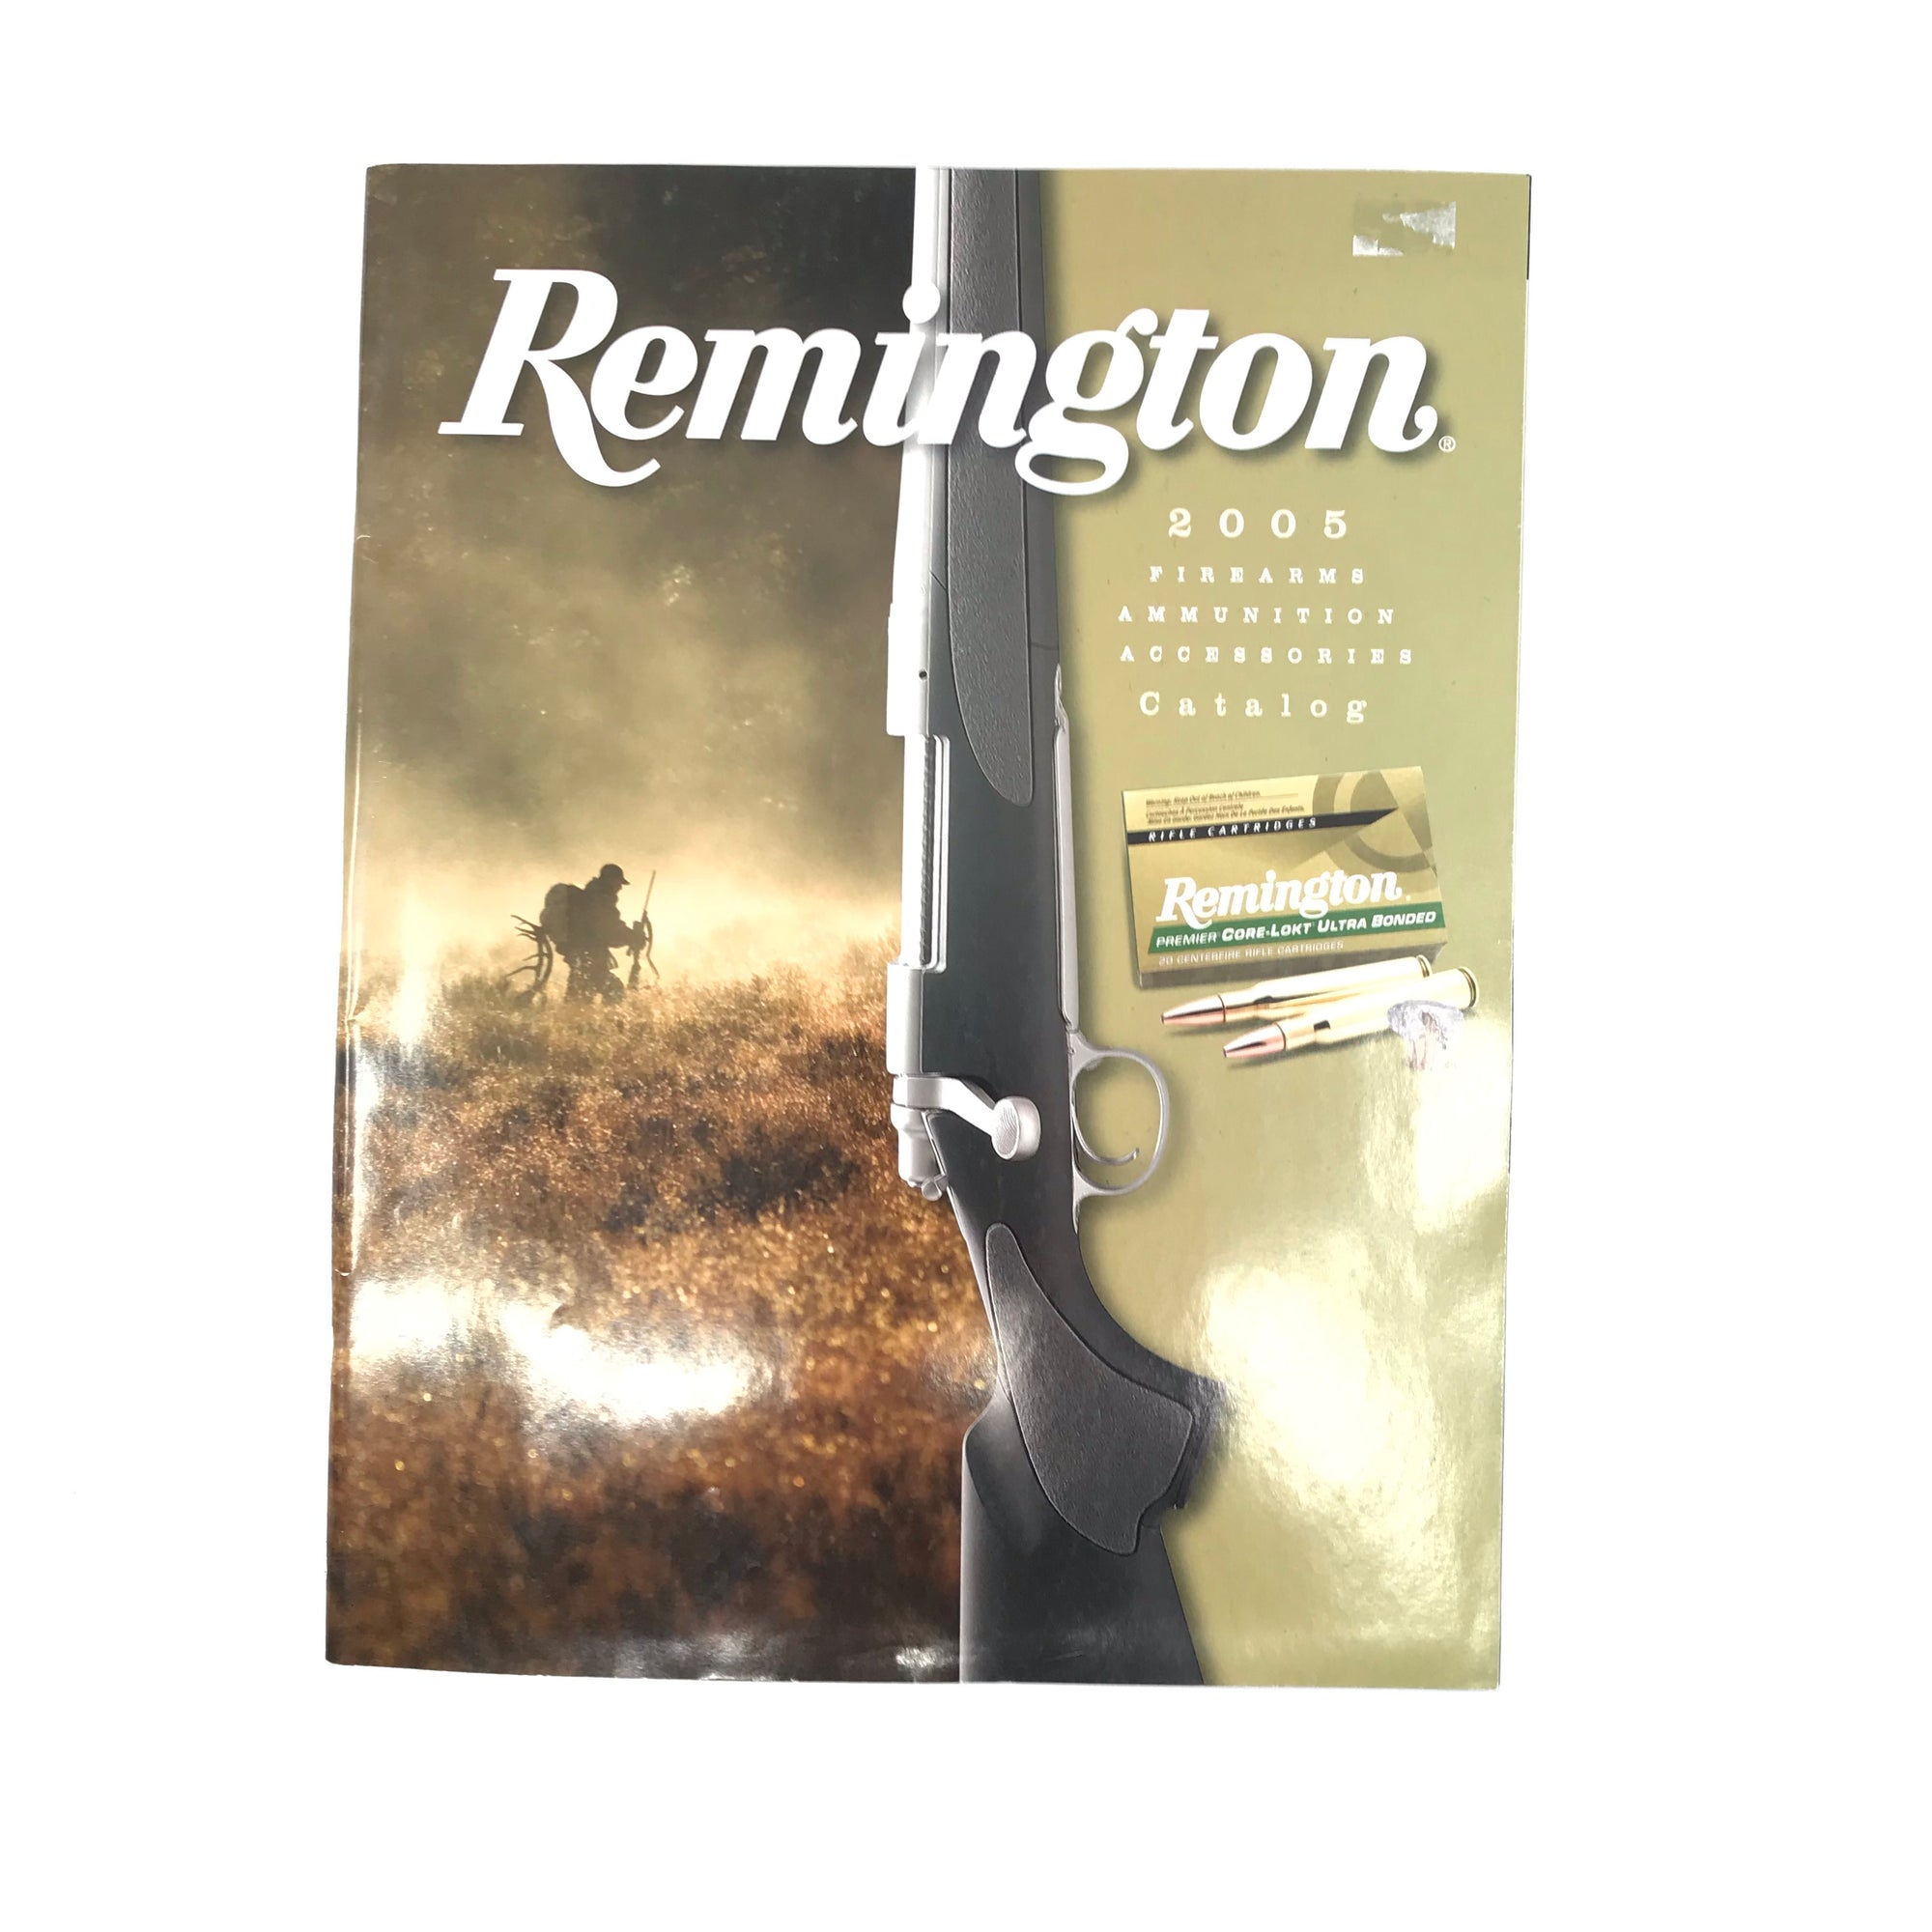 2005 Remington Firearms Ammunition Accessories Catalogue